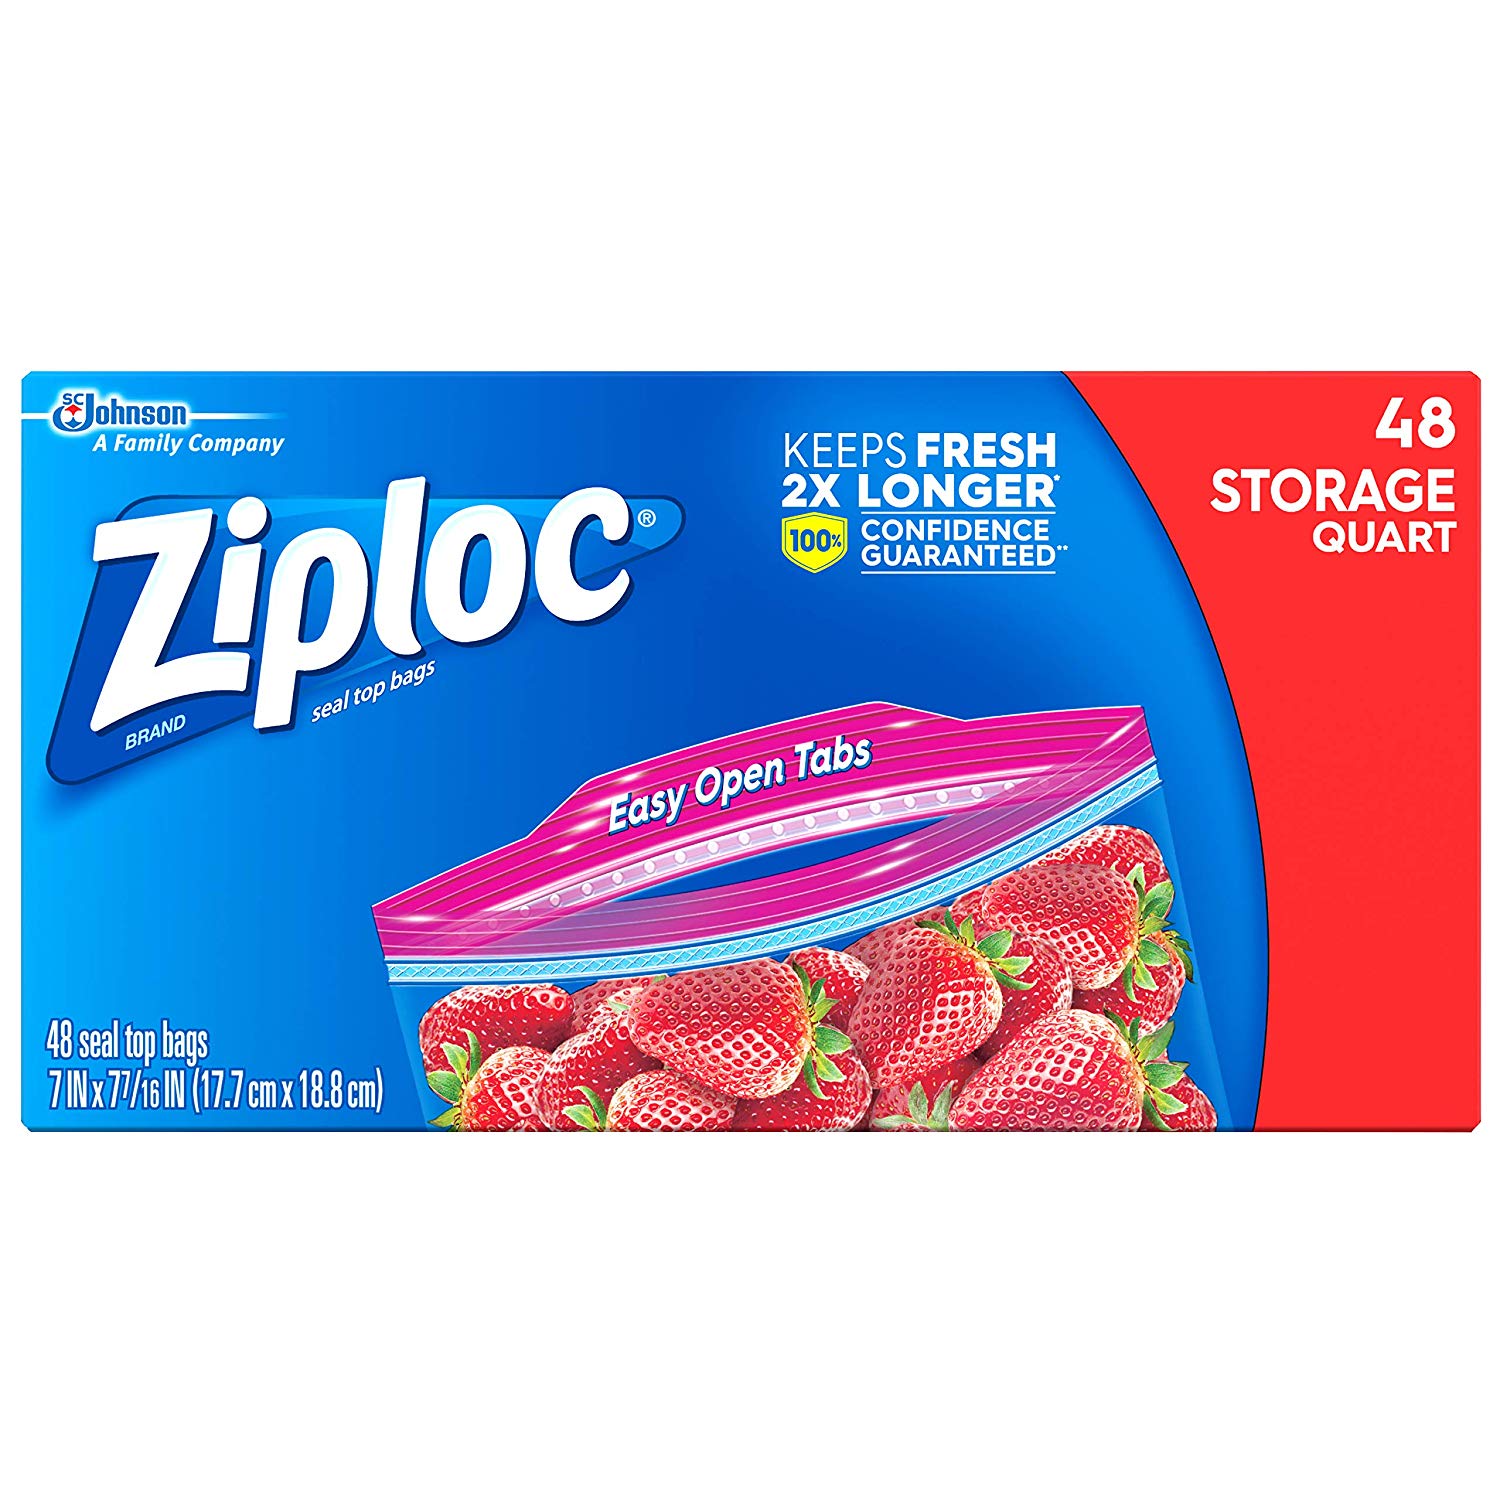 Ziploc Storage Quart 48 count